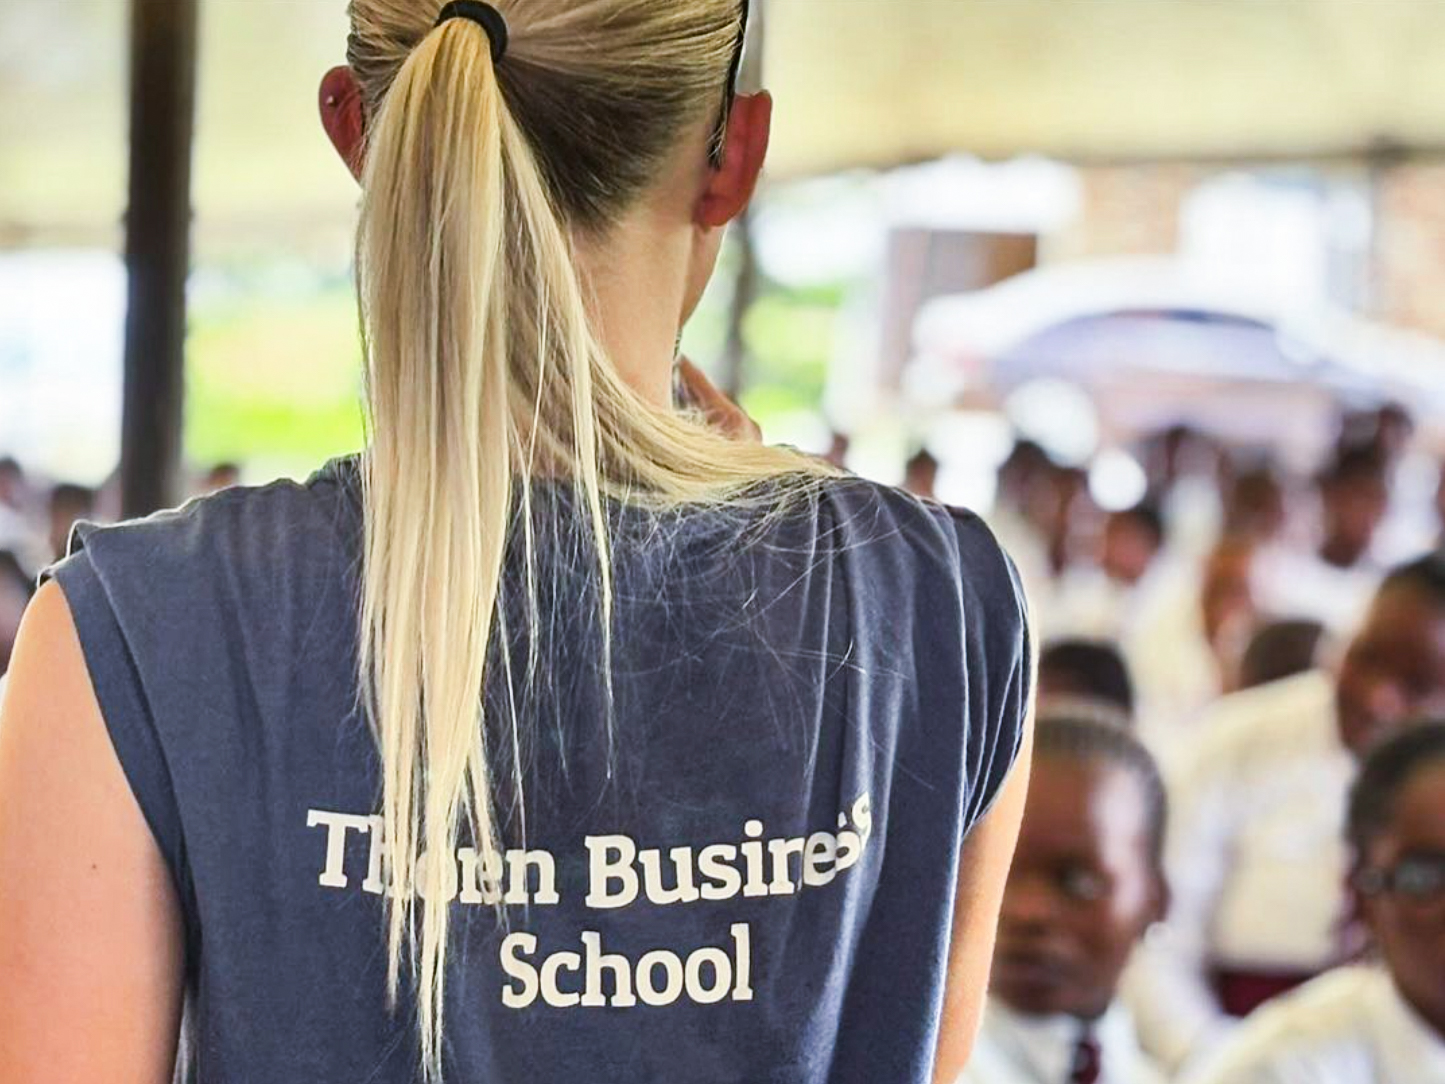 Featured image for “De har hjälpt en afrikansk skola i 8 år: “Viktigt att vi fortsätter””